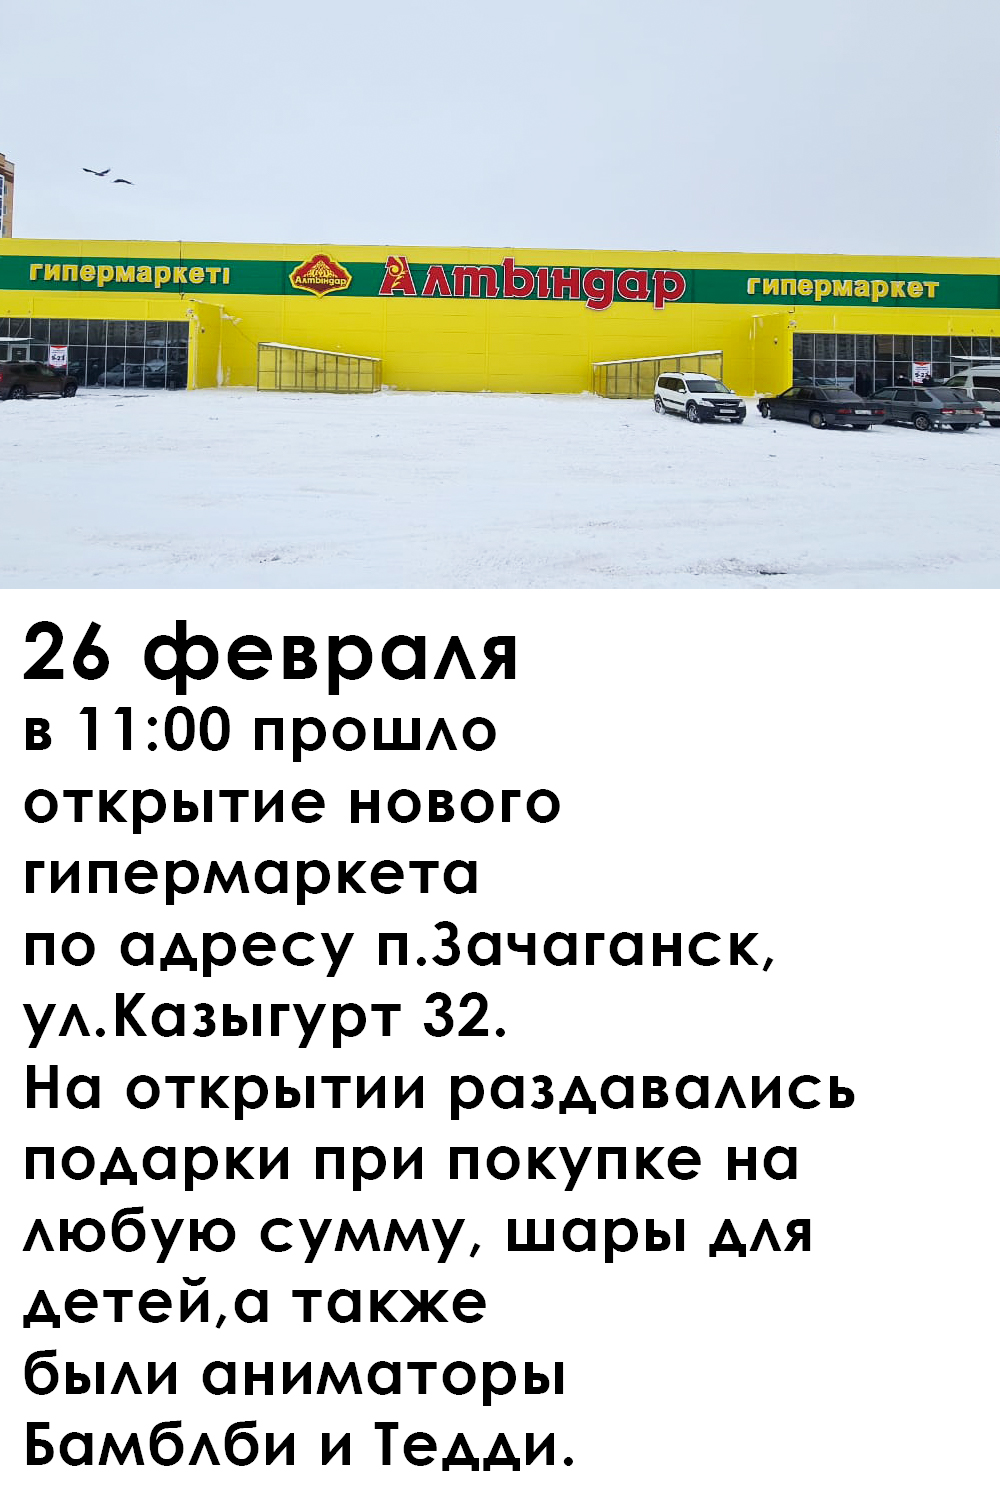 Открылся новый гипермаркет в п.Зачаганск!